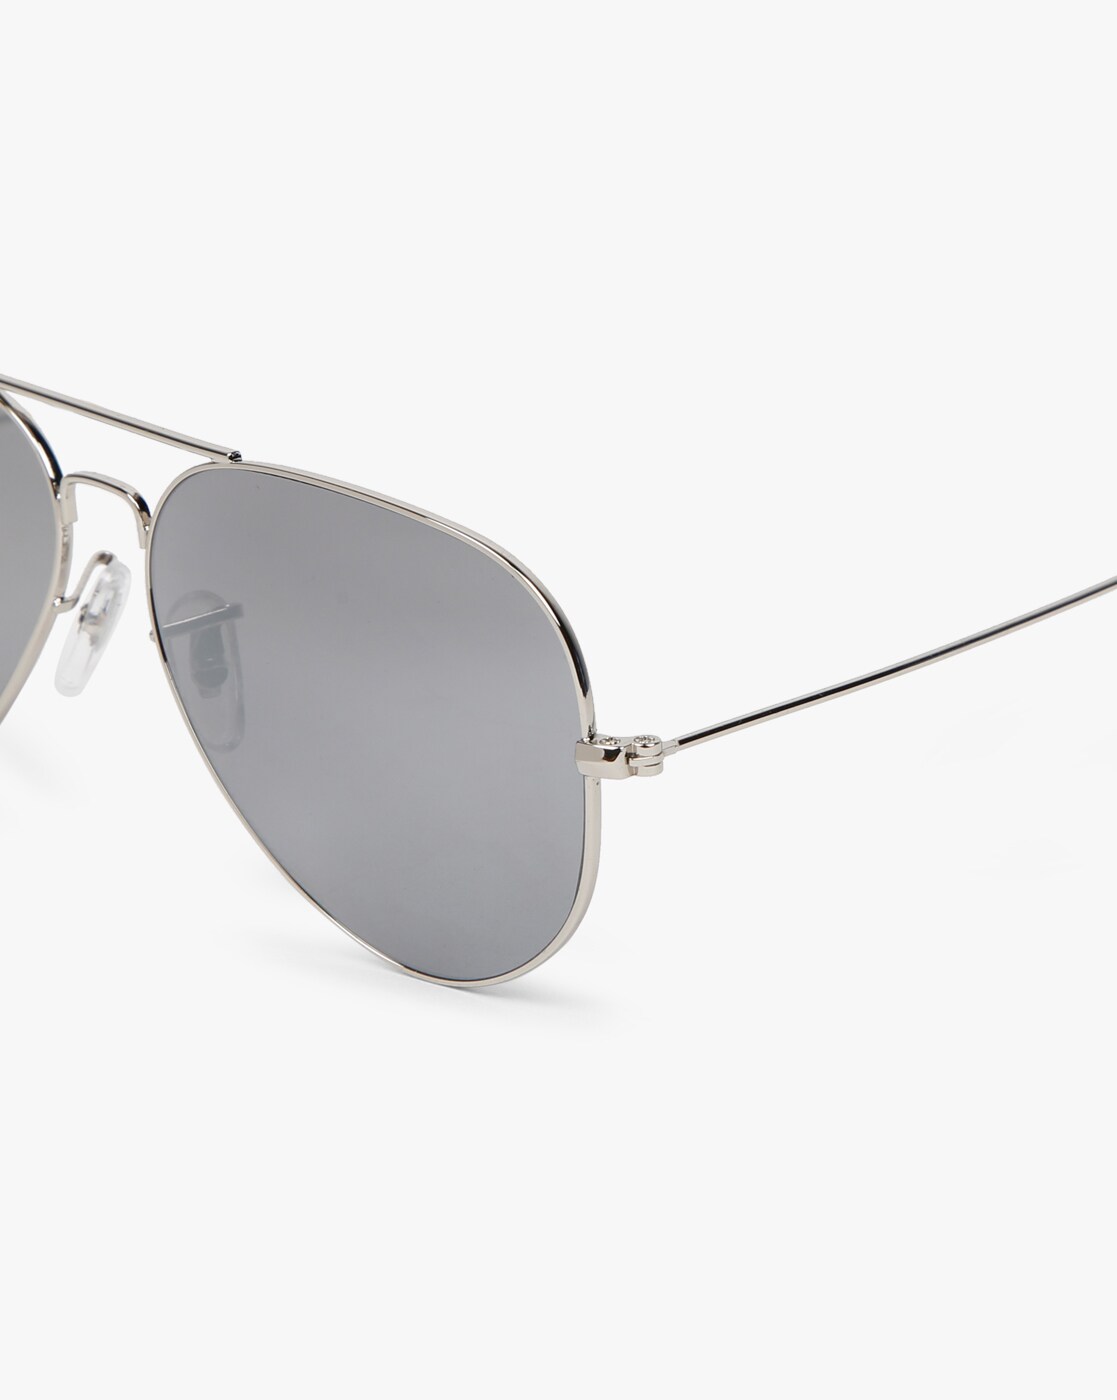 Buy codeyes Aviator, Rectangular Sunglasses Silver For Men & Women Online @  Best Prices in India | Flipkart.com